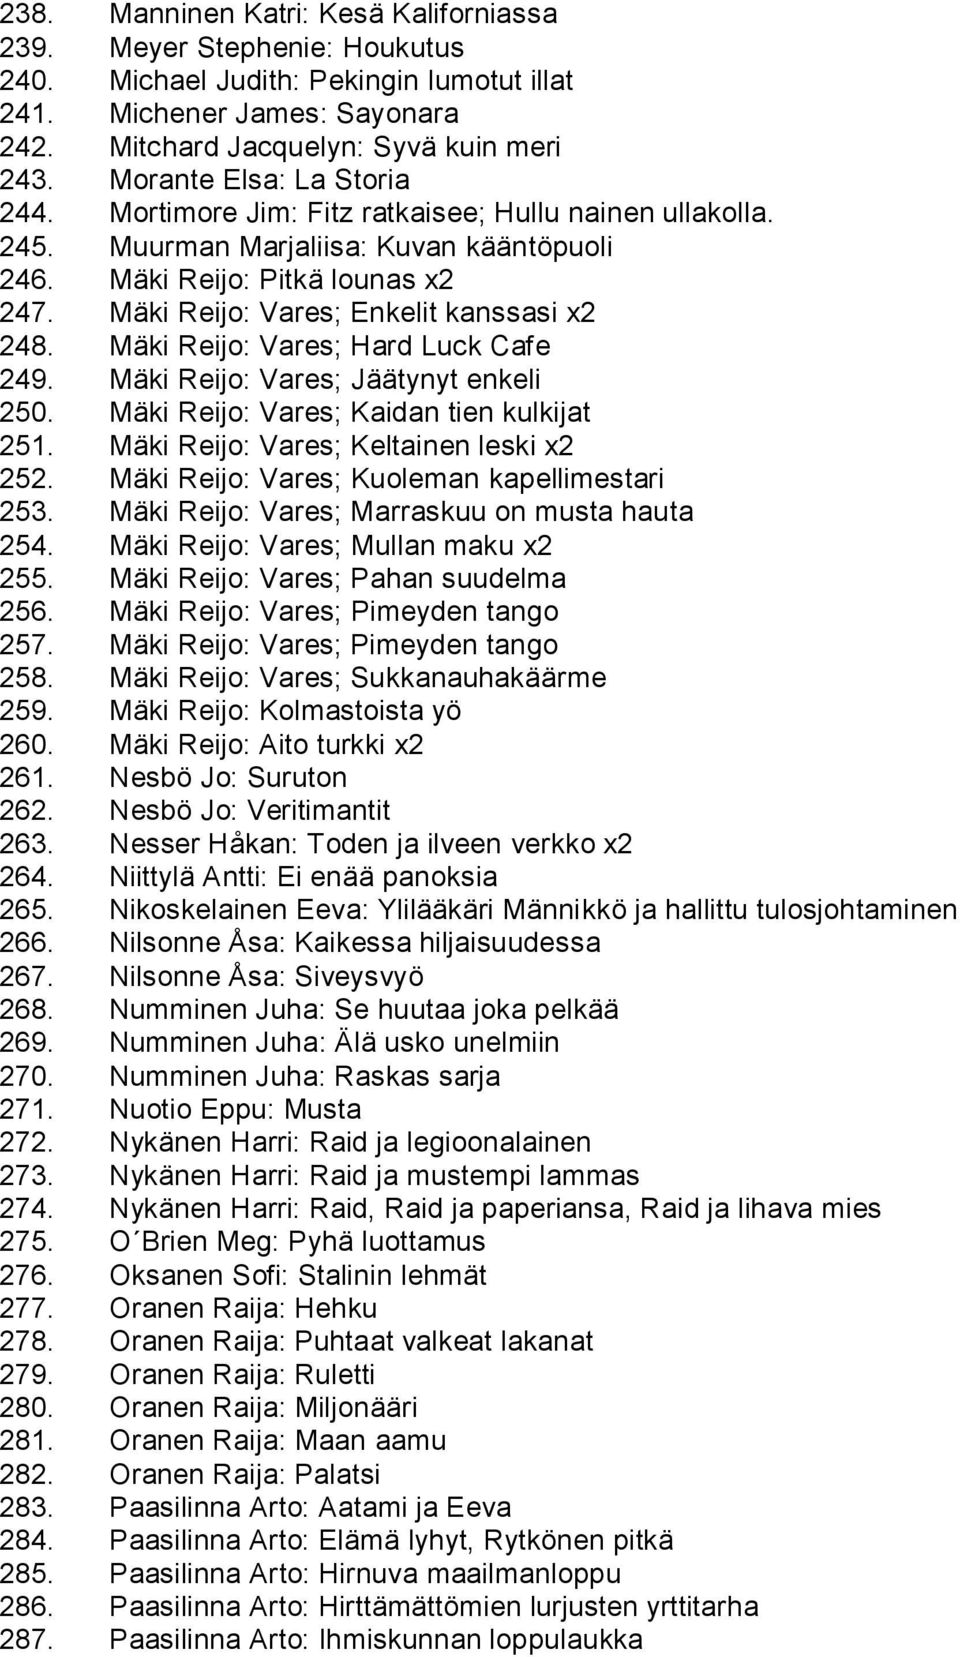 Mäki Reijo: Vares; Enkelit kanssasi x2 248. Mäki Reijo: Vares; Hard Luck Cafe 249. Mäki Reijo: Vares; Jäätynyt enkeli 250. Mäki Reijo: Vares; Kaidan tien kulkijat 251.